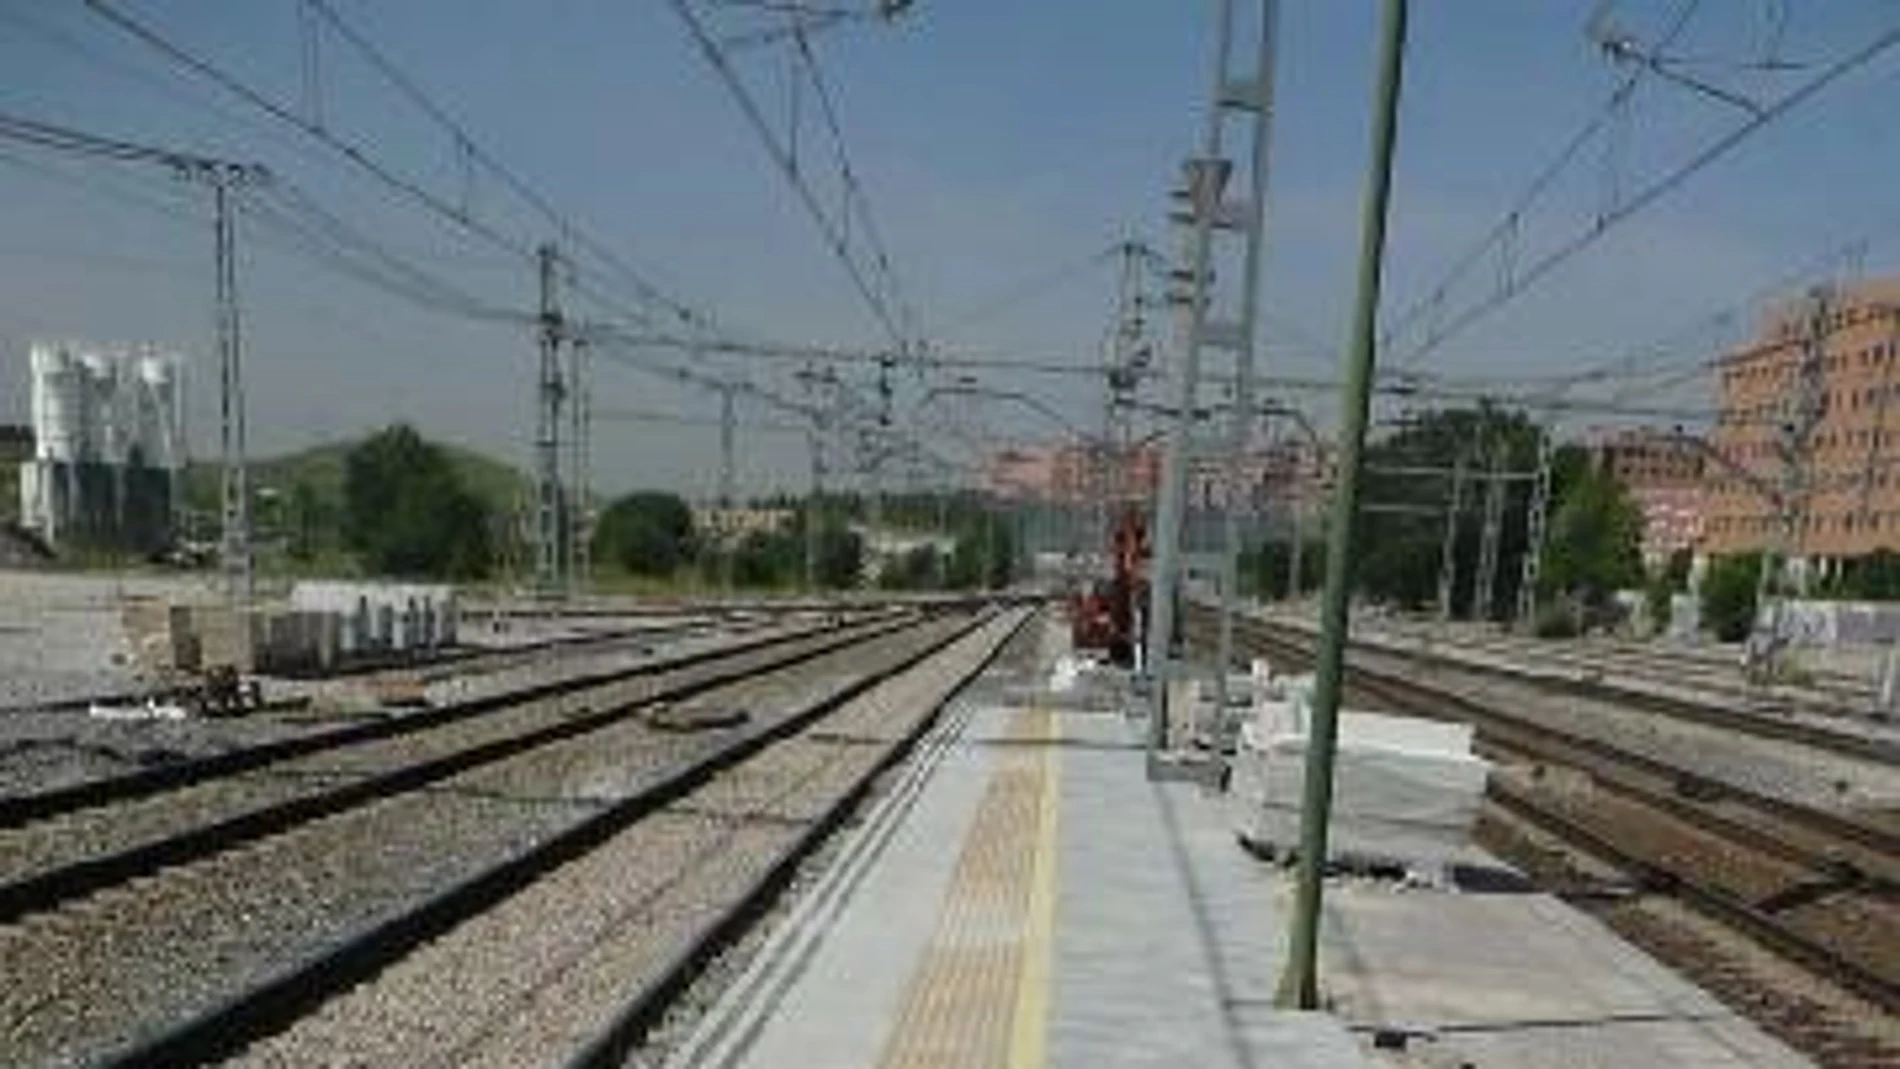 Fallece un joven de 15 años tras electrocutarse por tocar la catenaria en una estación de trenes de Madrid